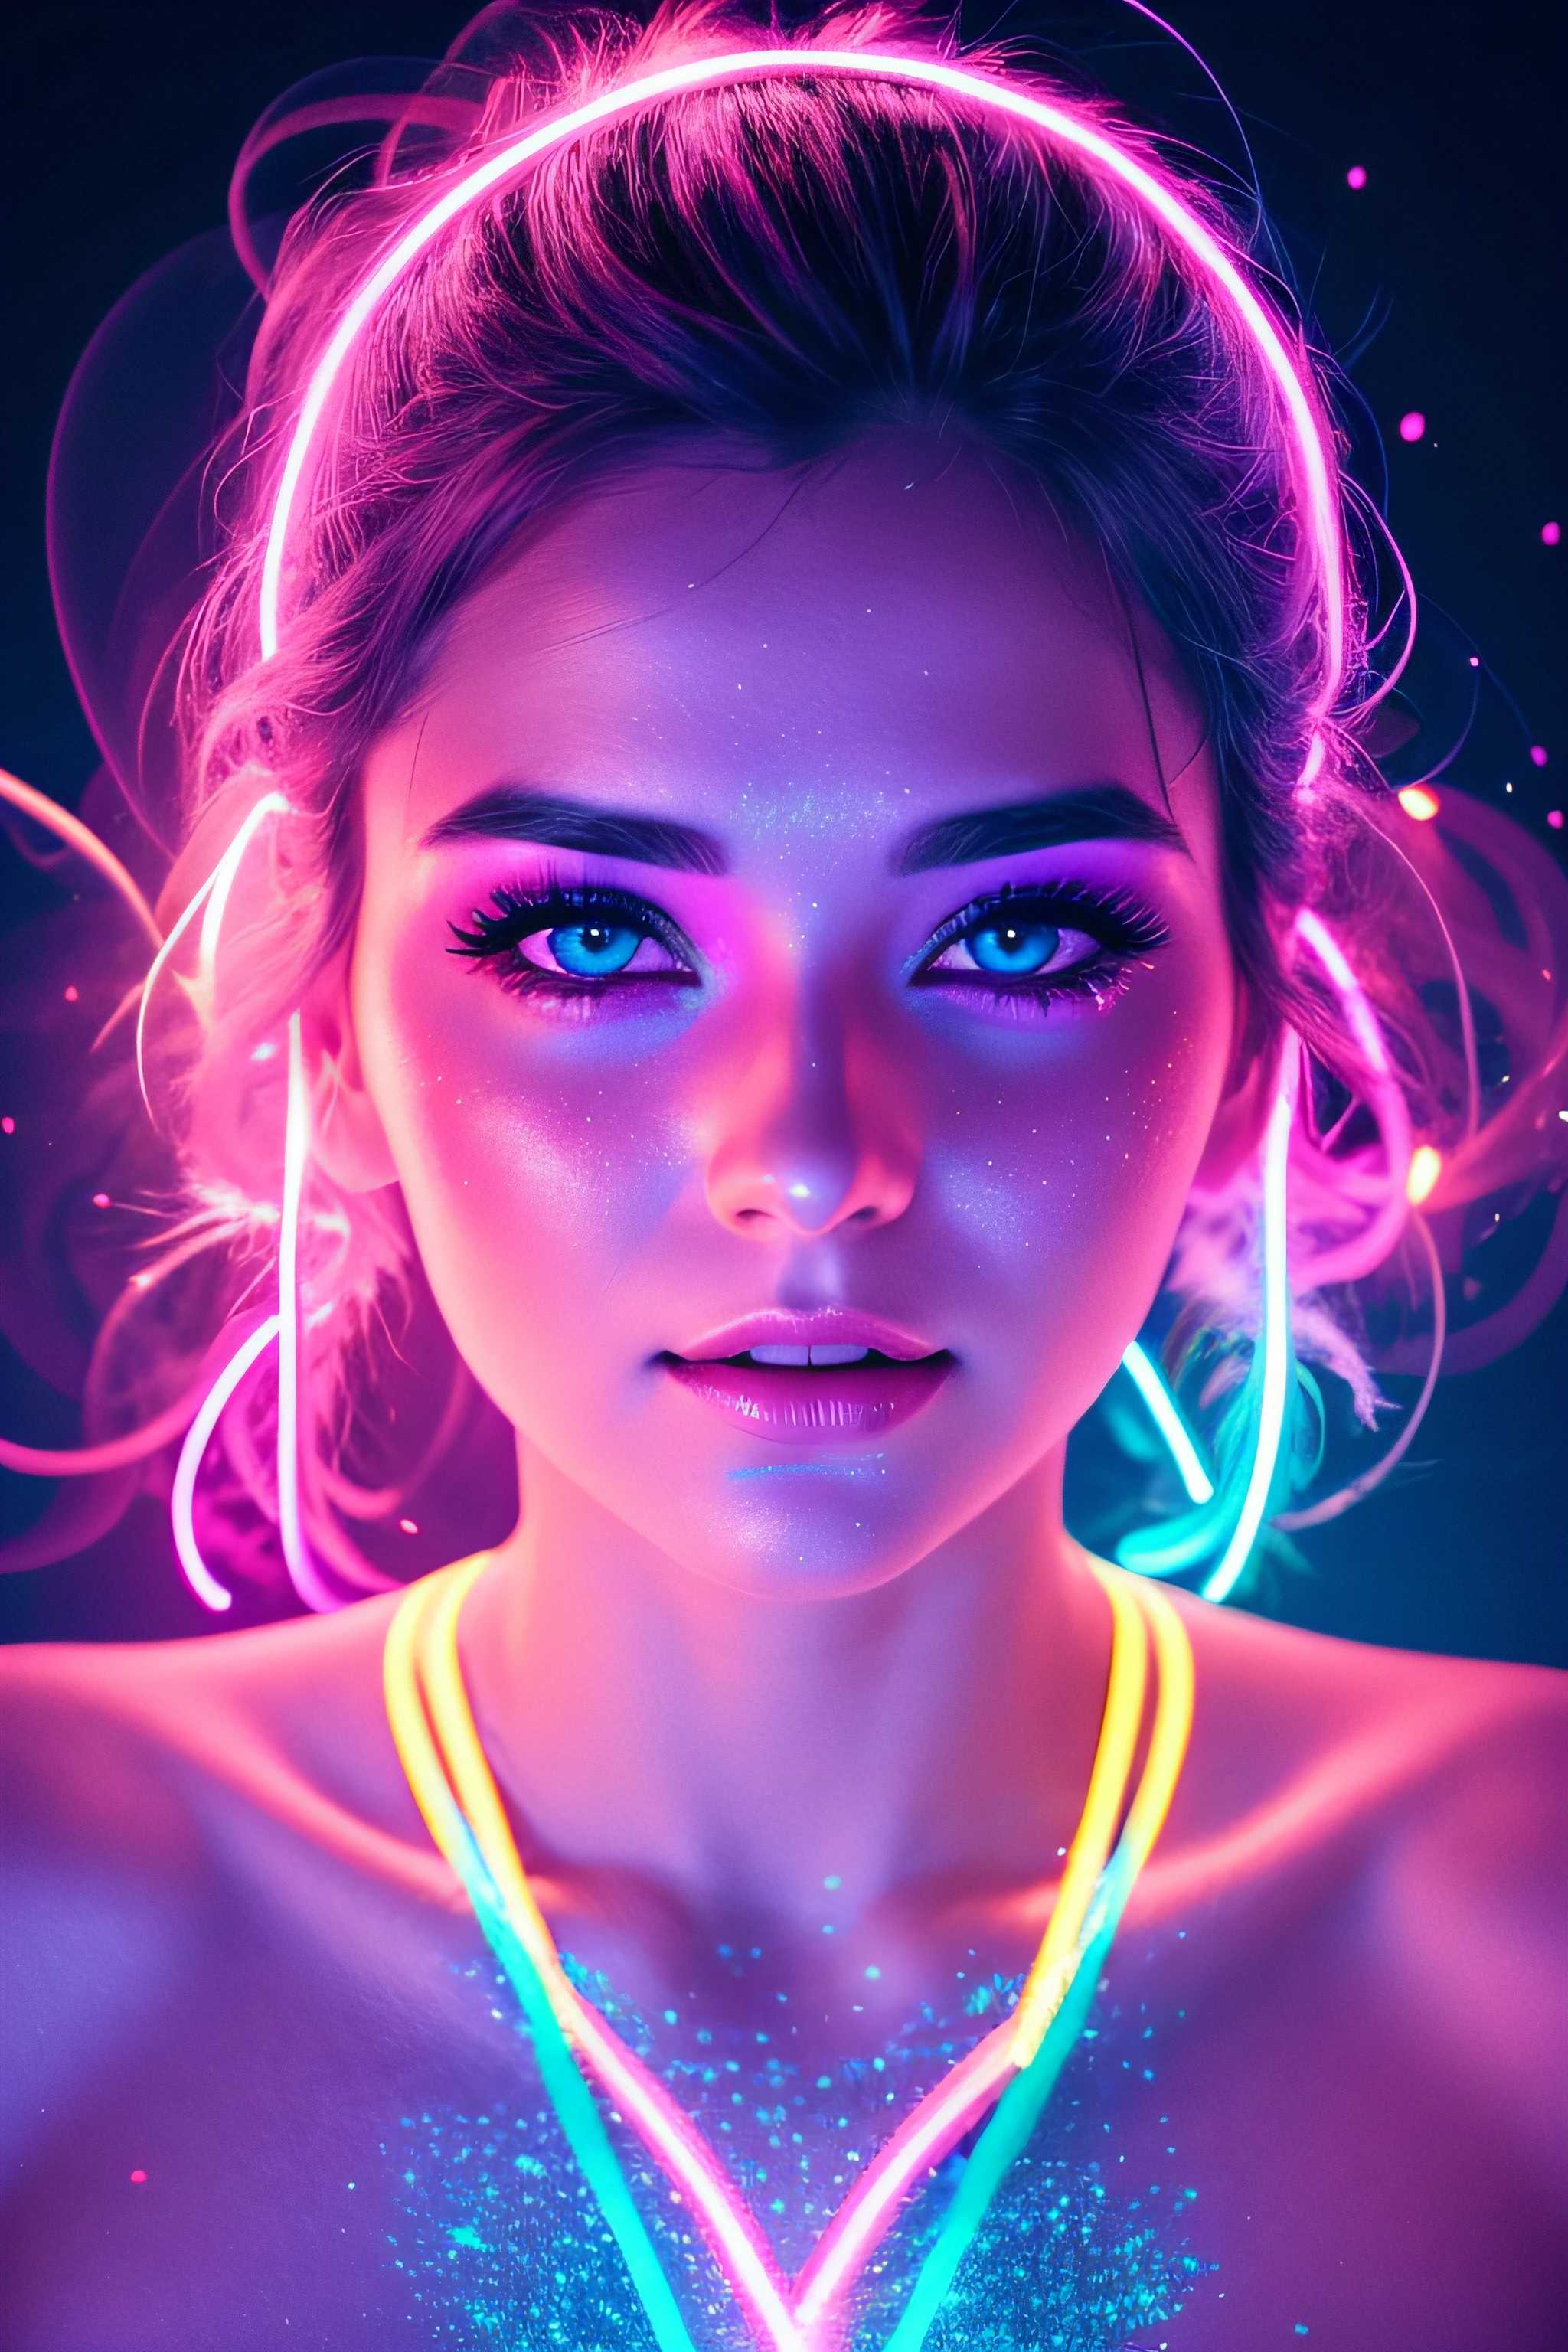 色付きのライトで照らされた美しい30歳の女性の顔フォトリアリスティックな背景明るい色明るいネオンピンクとネオンブルーのキラキラほこりの背景とピンクと青の煙の蒸気